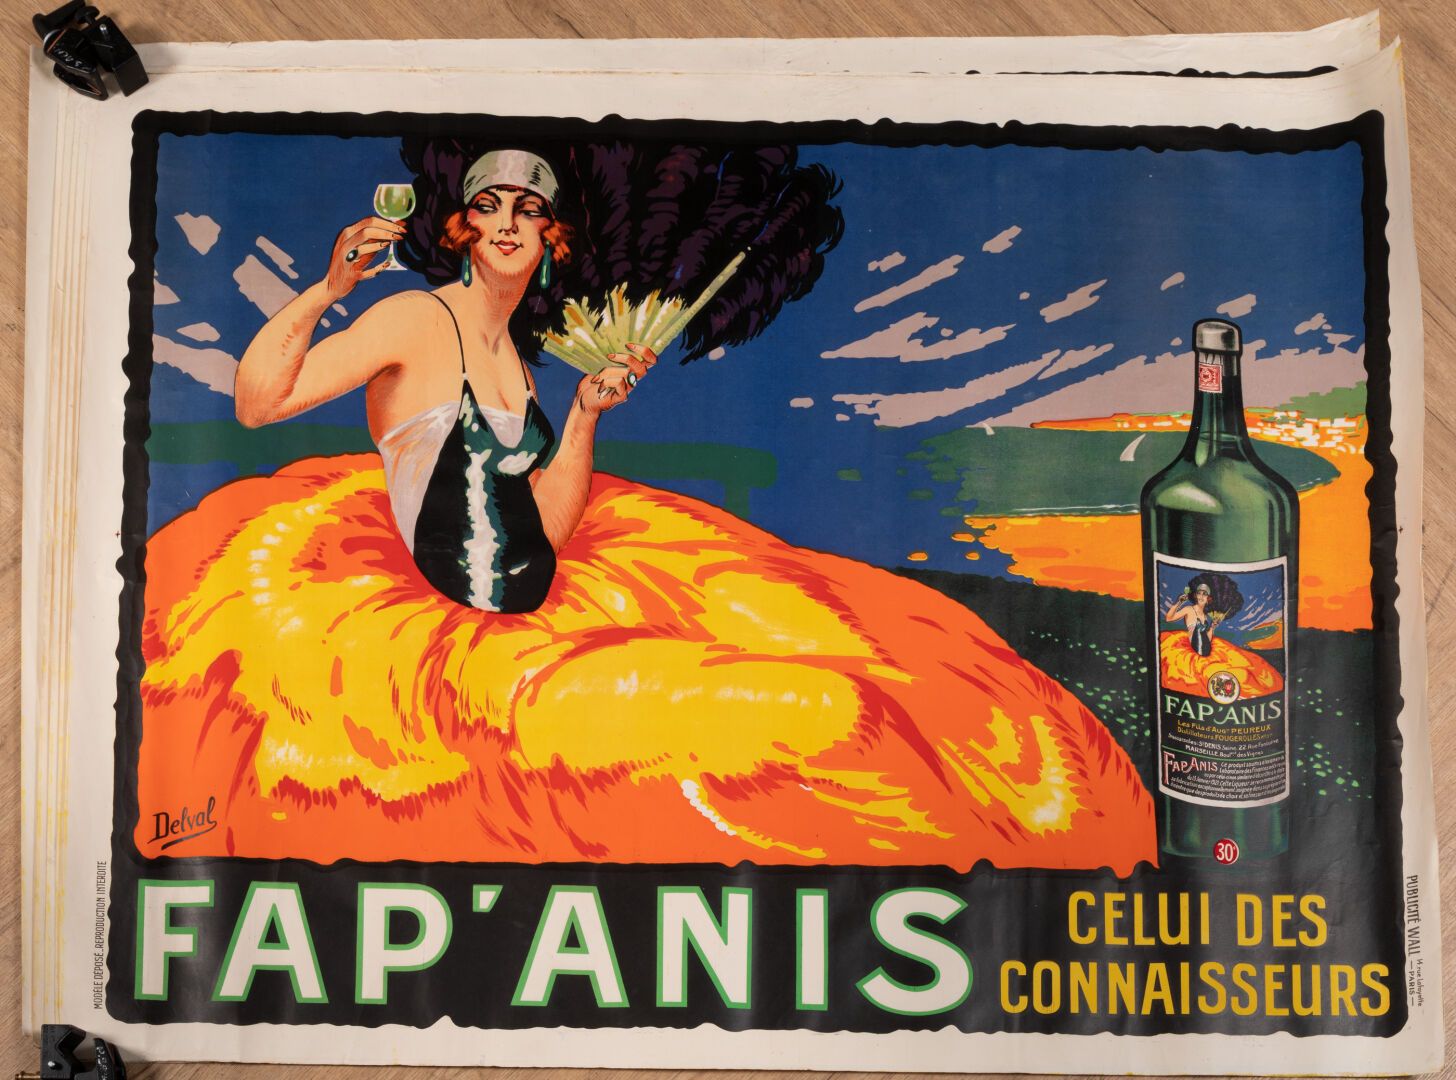 DELVAL Henri 7件AFFICHES FAP'ANIS "鉴赏家的作品"。

约1925年

巴黎广告墙

H.120厘米。长：160厘米

褶皱，有&hellip;